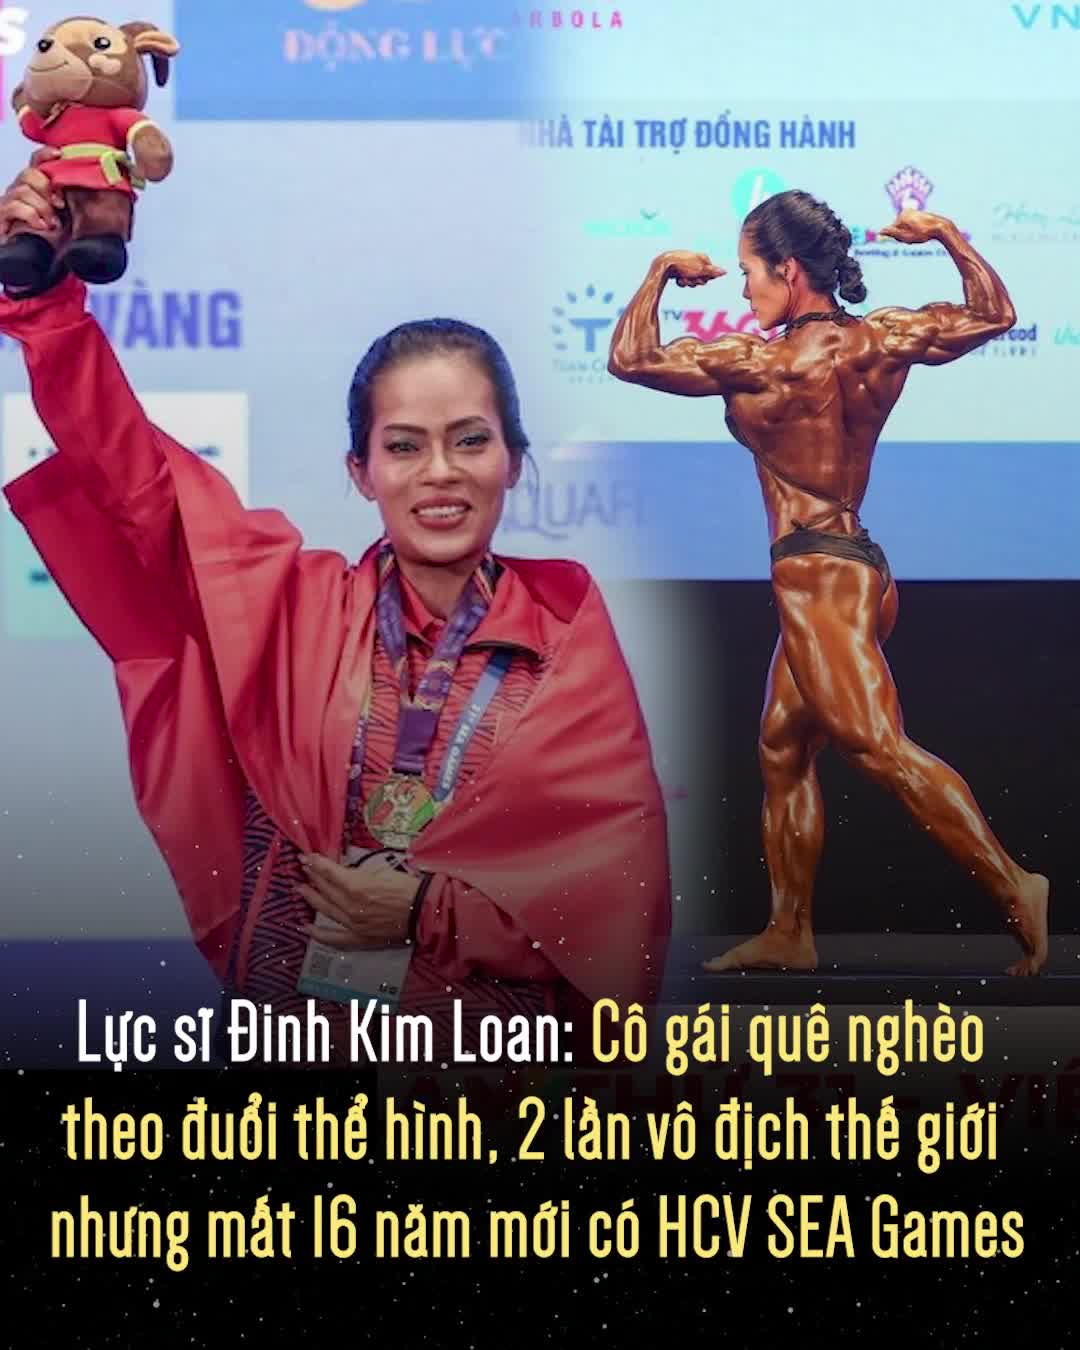 Lực sĩ Đinh Kim Loan: Cô gái quê nghèo vượt định kiến theo đuổi thể hình, 2 lần vô địch thế giới nhưng mất 16 năm mới có HCV SEA Games đầu tiên